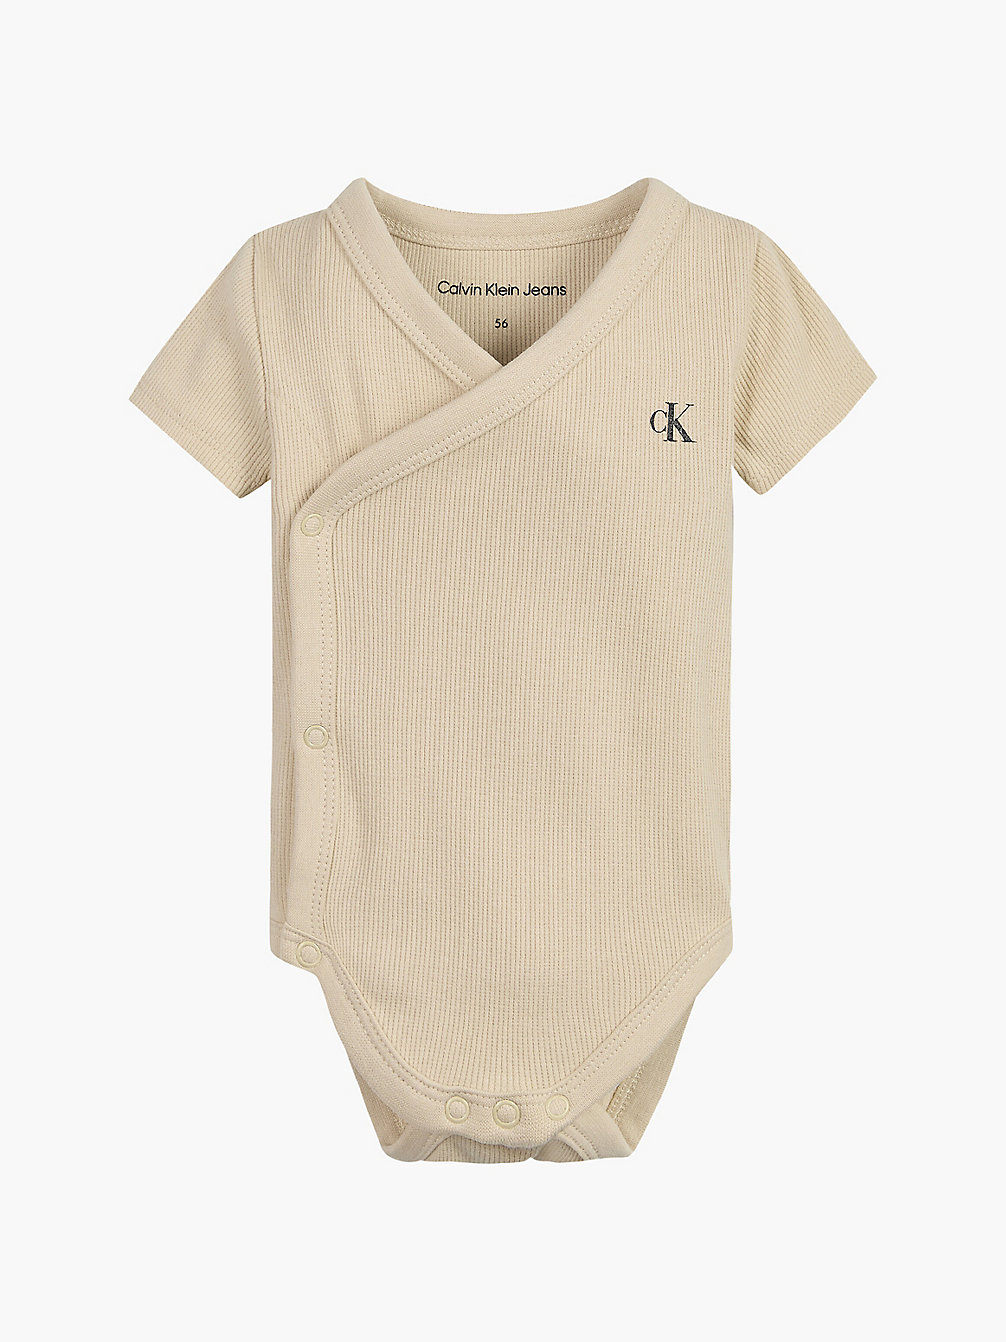 MUSLIN Baby-Body undefined newborn Calvin Klein